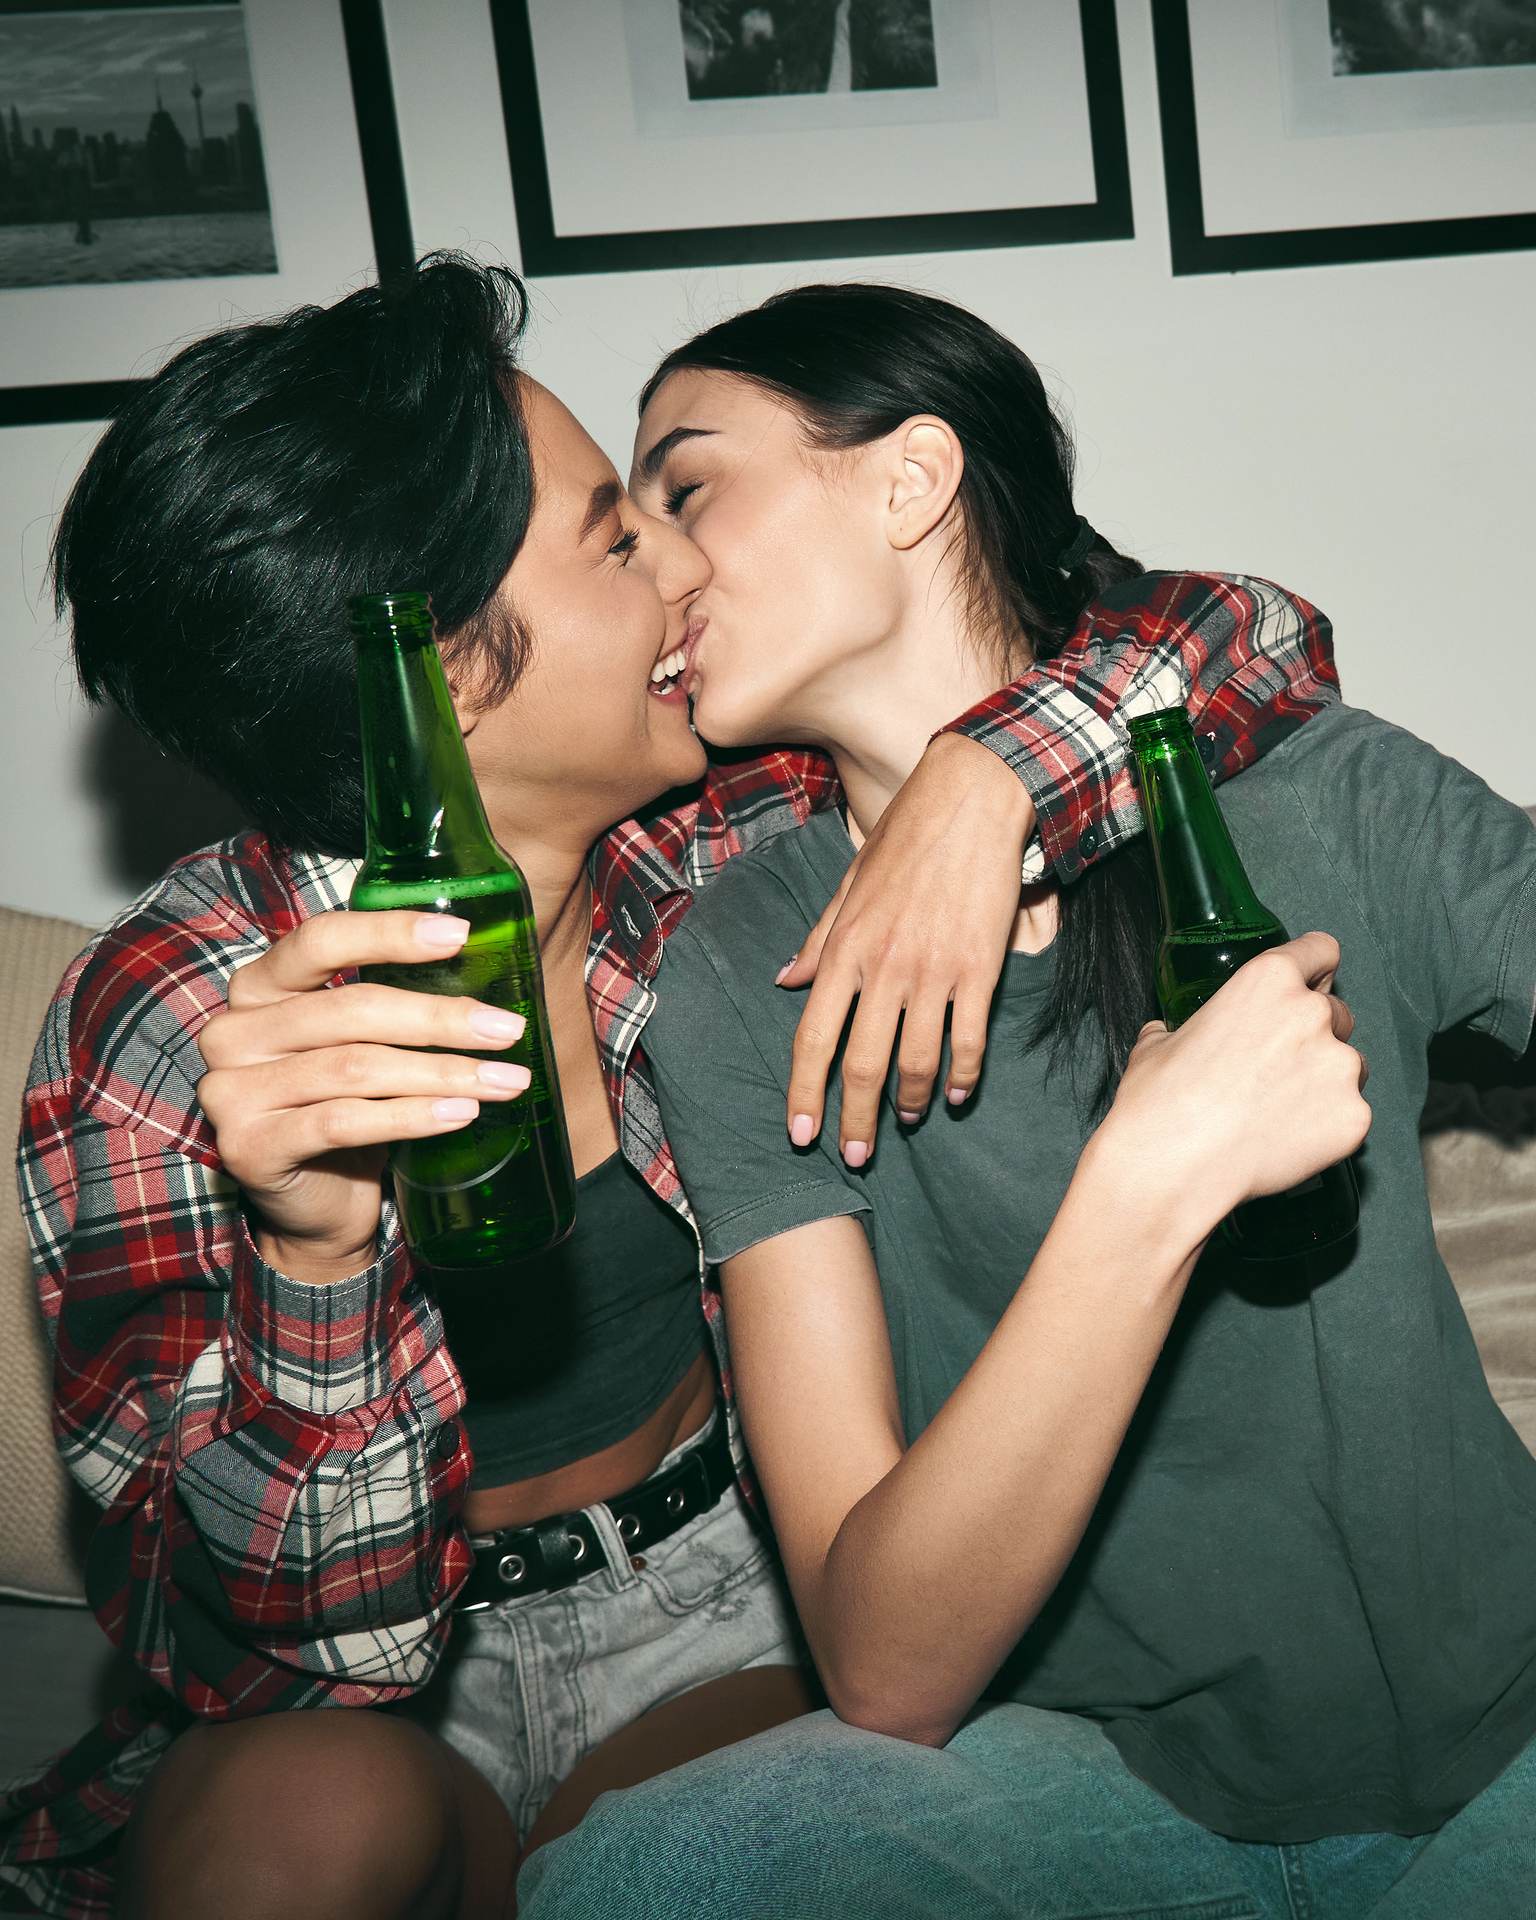 Zwei Frauen sitzen auf einer Couch und küssen sich. Beide halten eine Bierflasche in der Hand.